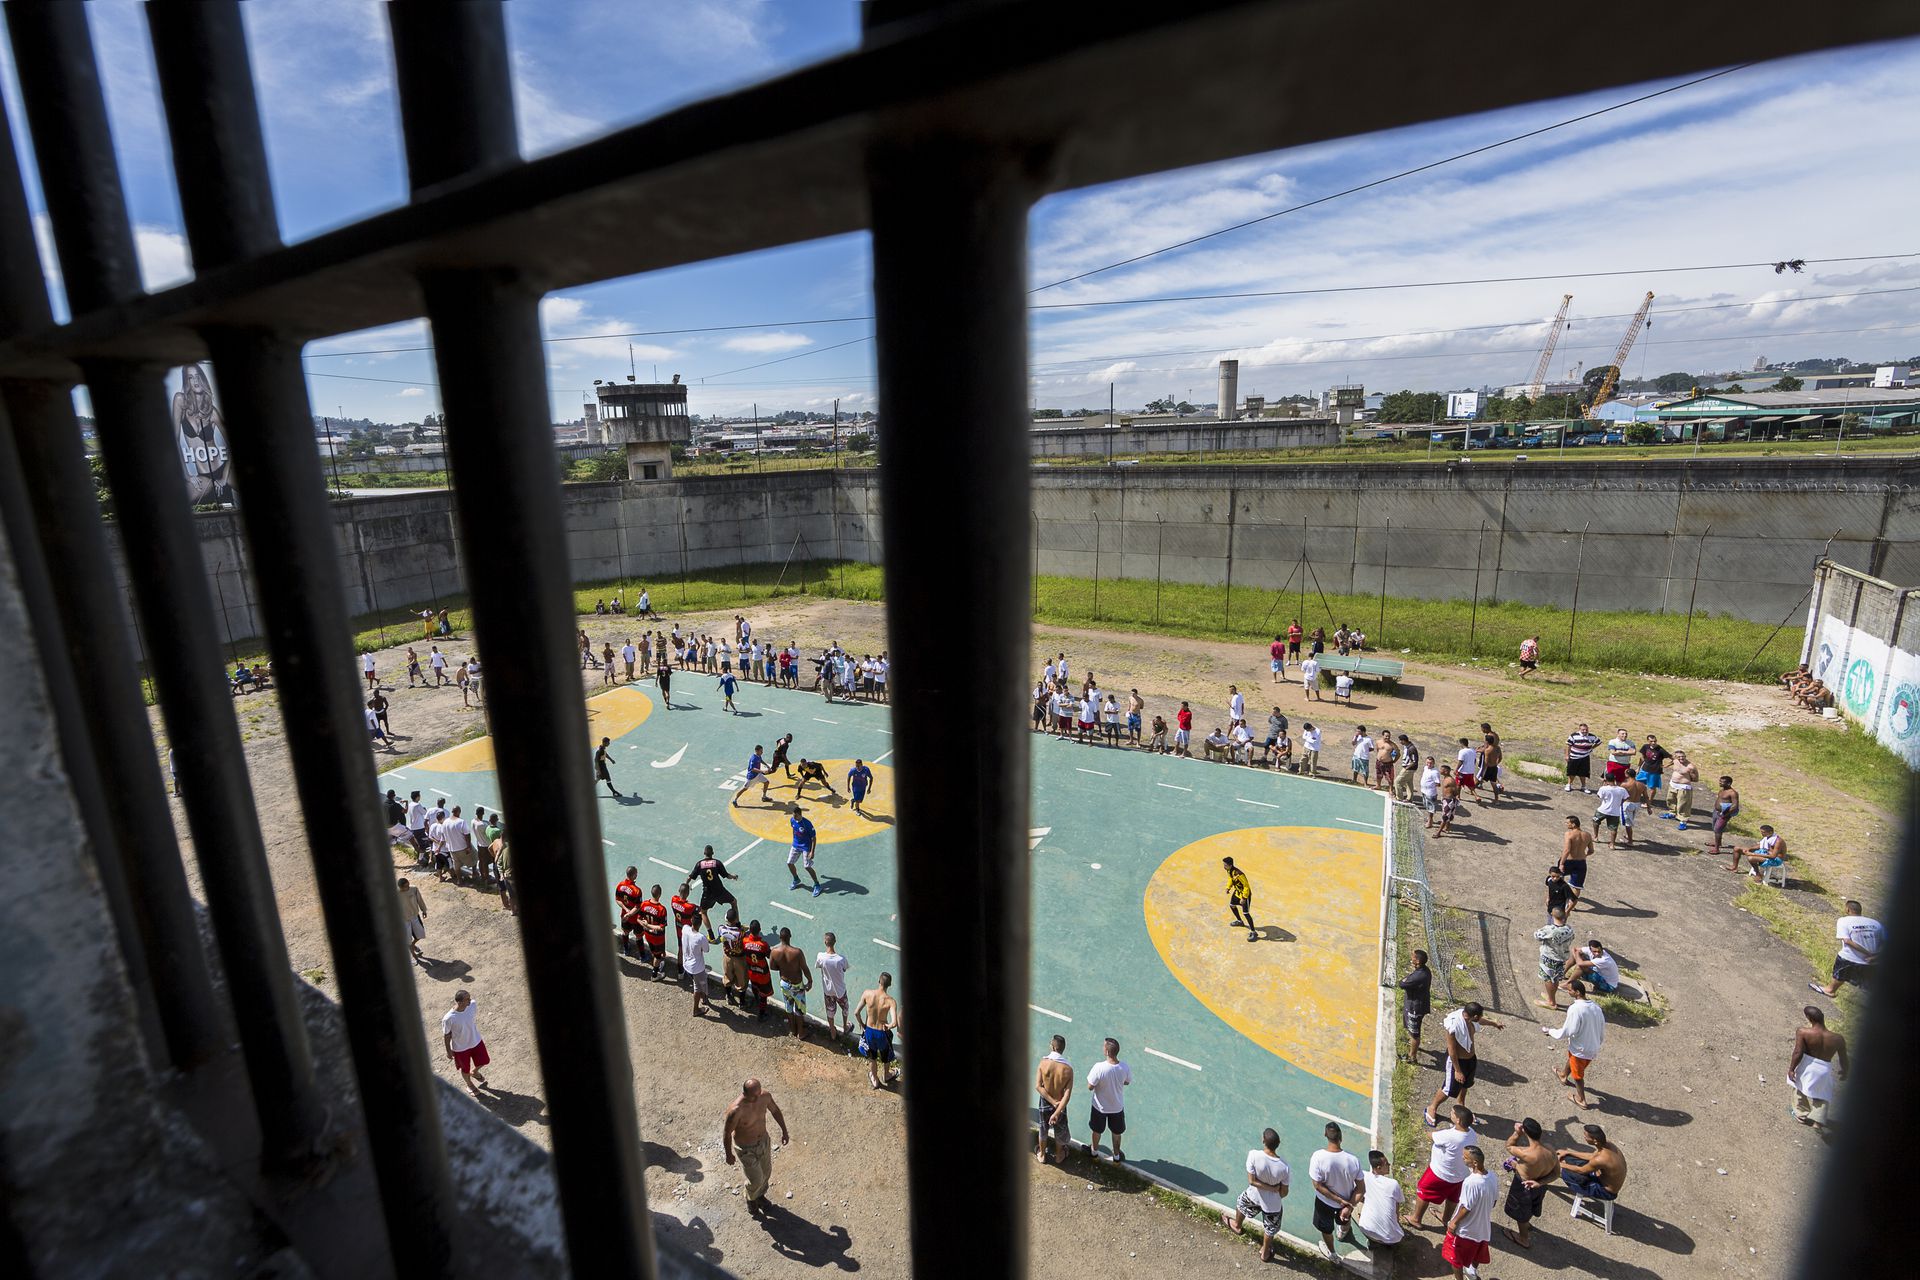 A brazil börtönökben rendszeresek a bandaháborúk és az emberölések is
Fotó: gettyimages